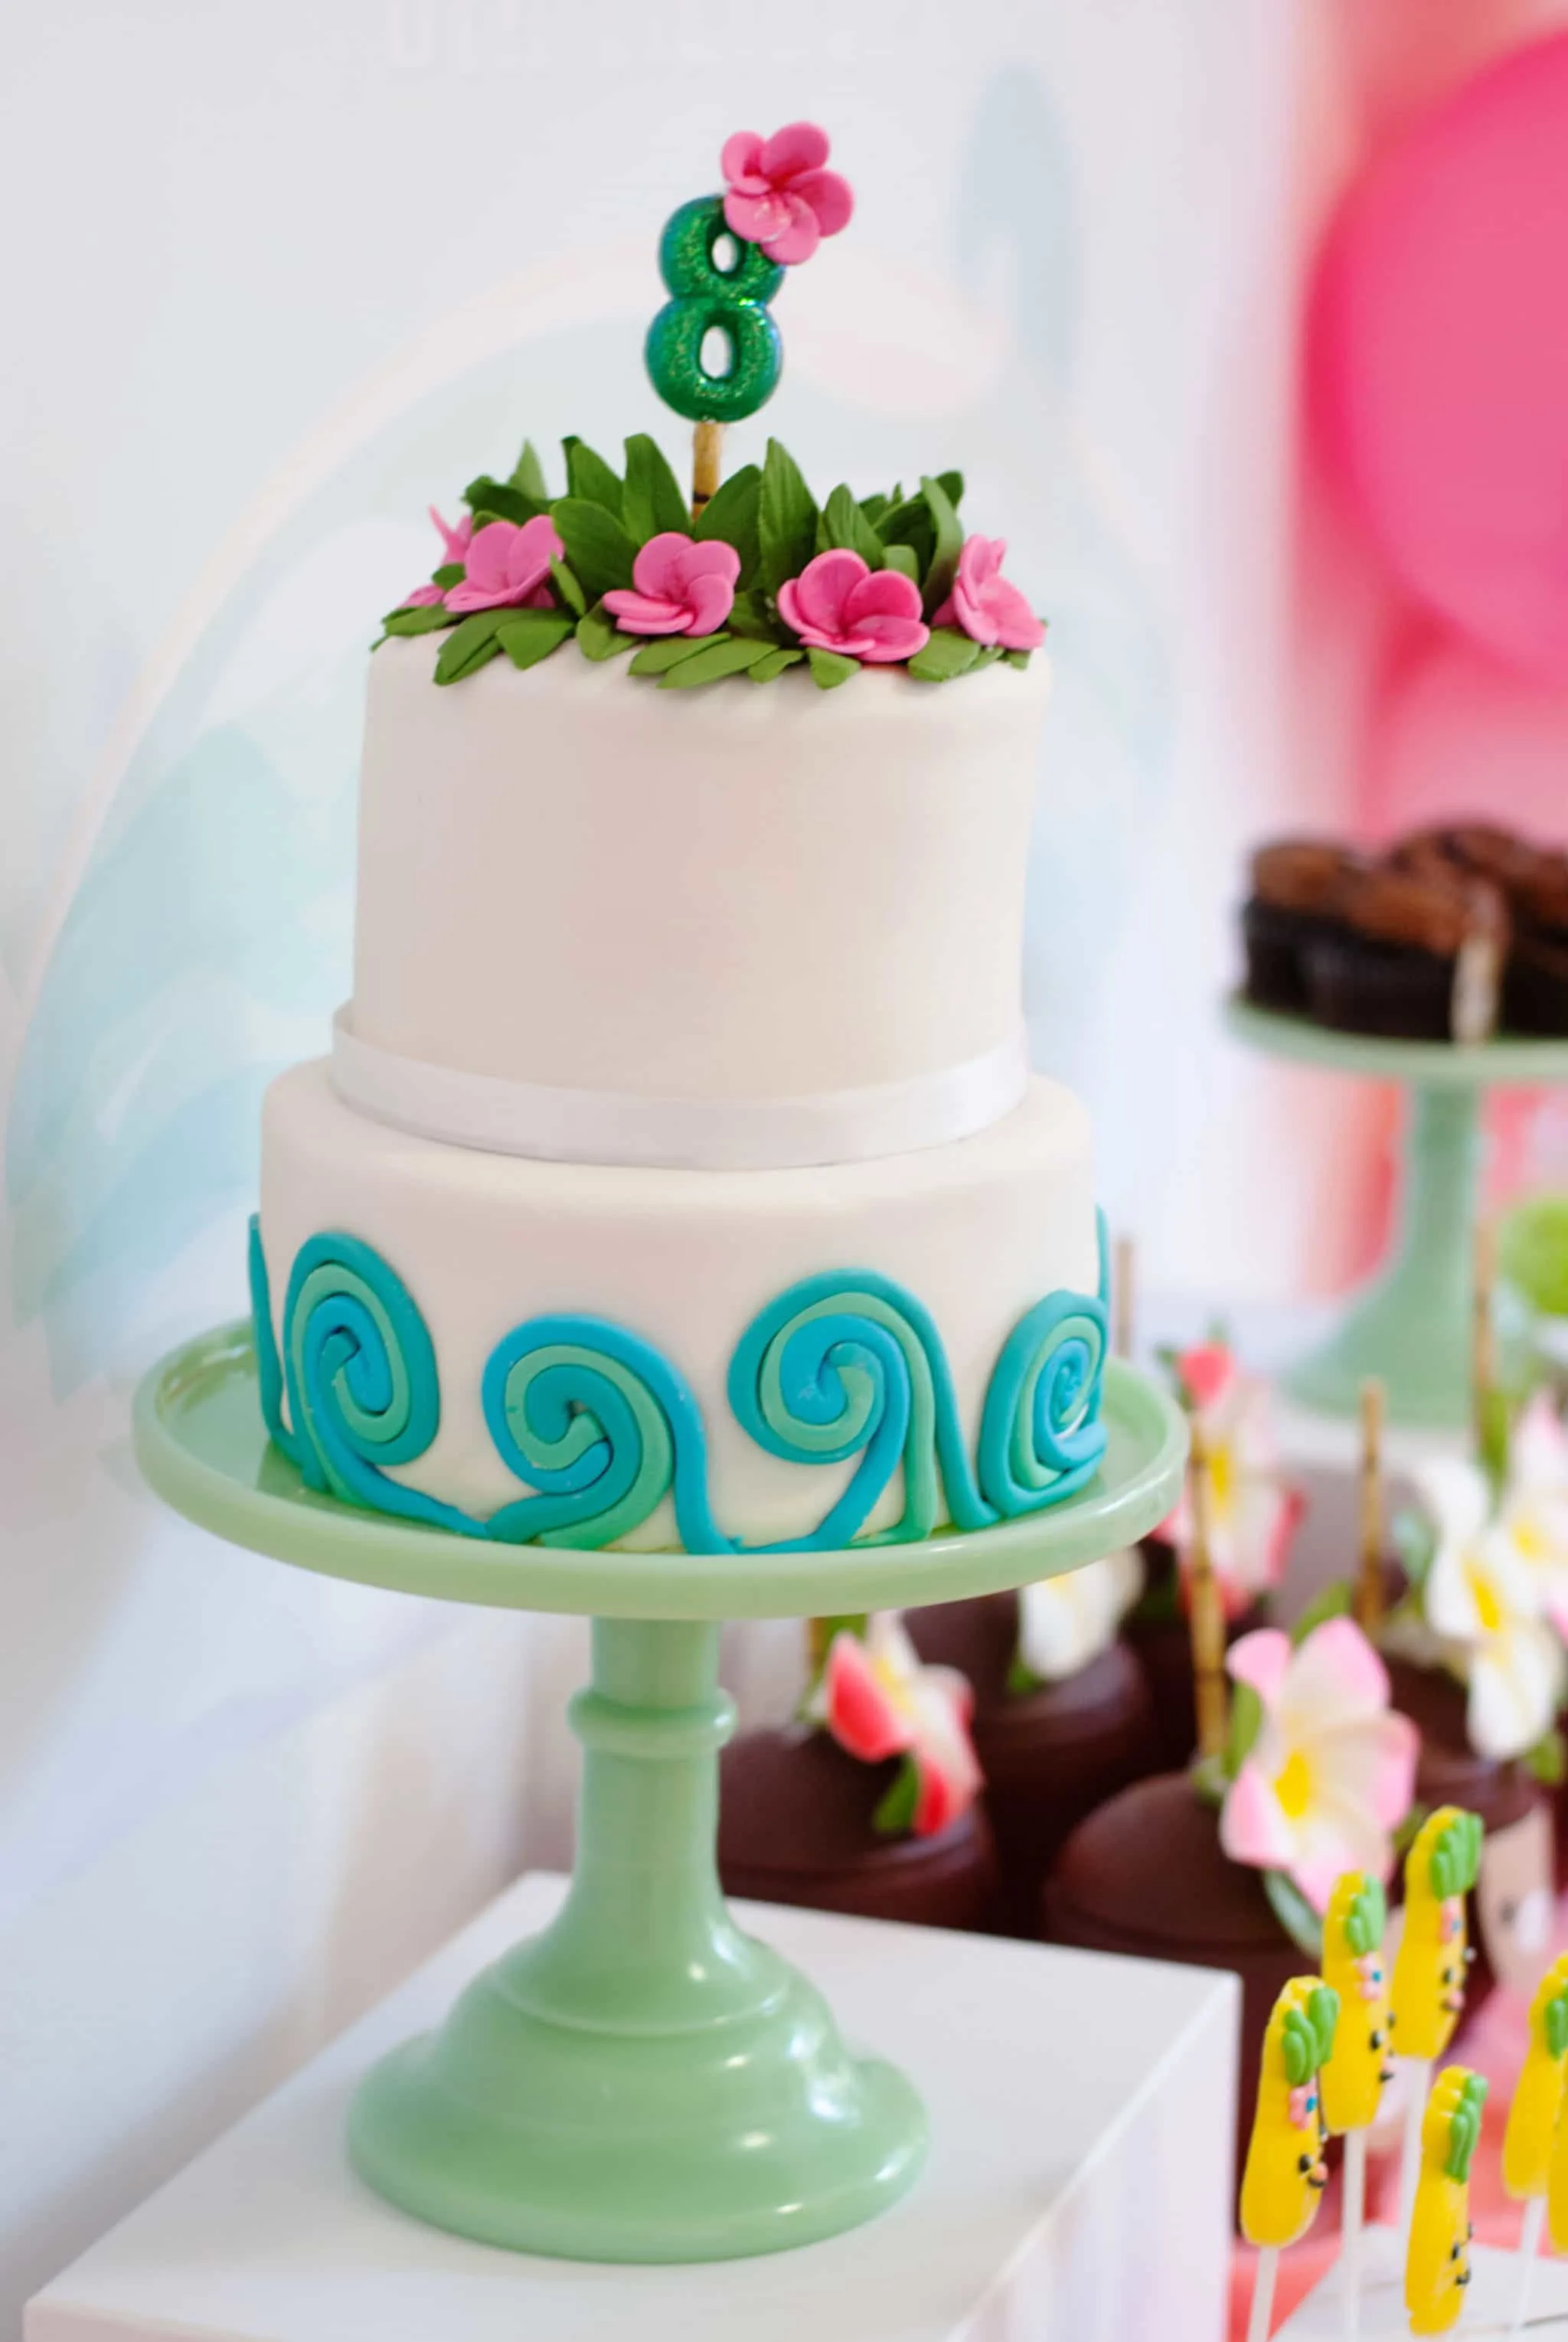 Moana Birthday Party Ideas Cake - Project Nursery